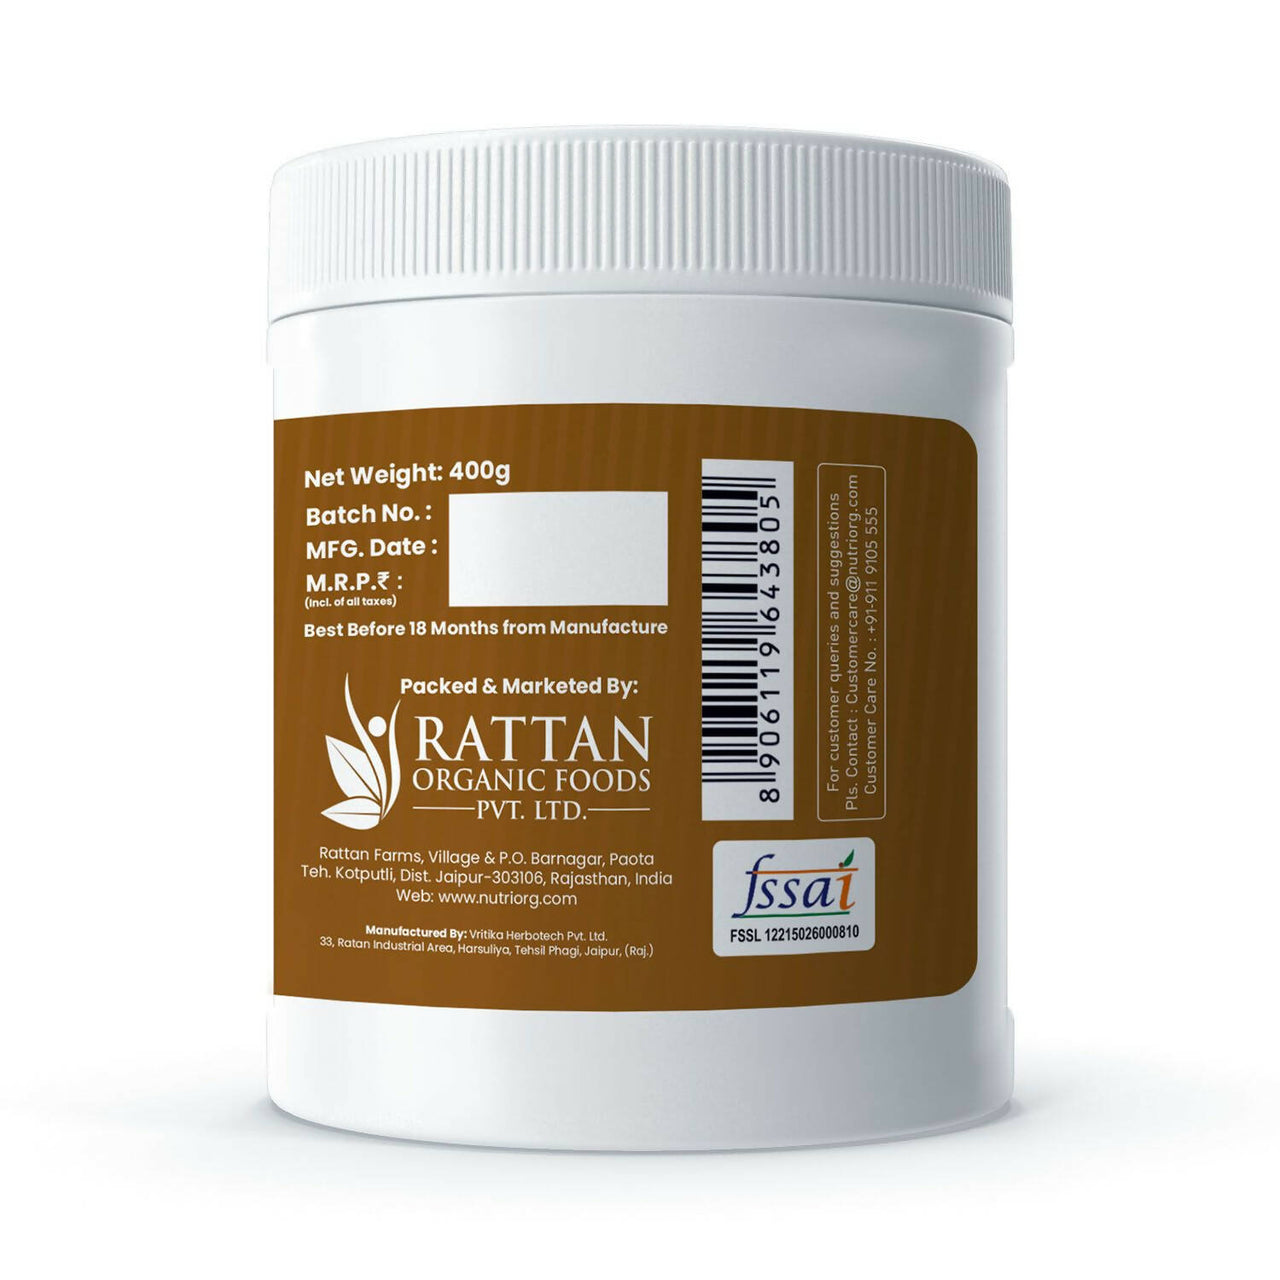 Nutriorg Protein Plus Chocolate Flavor Powder - Distacart